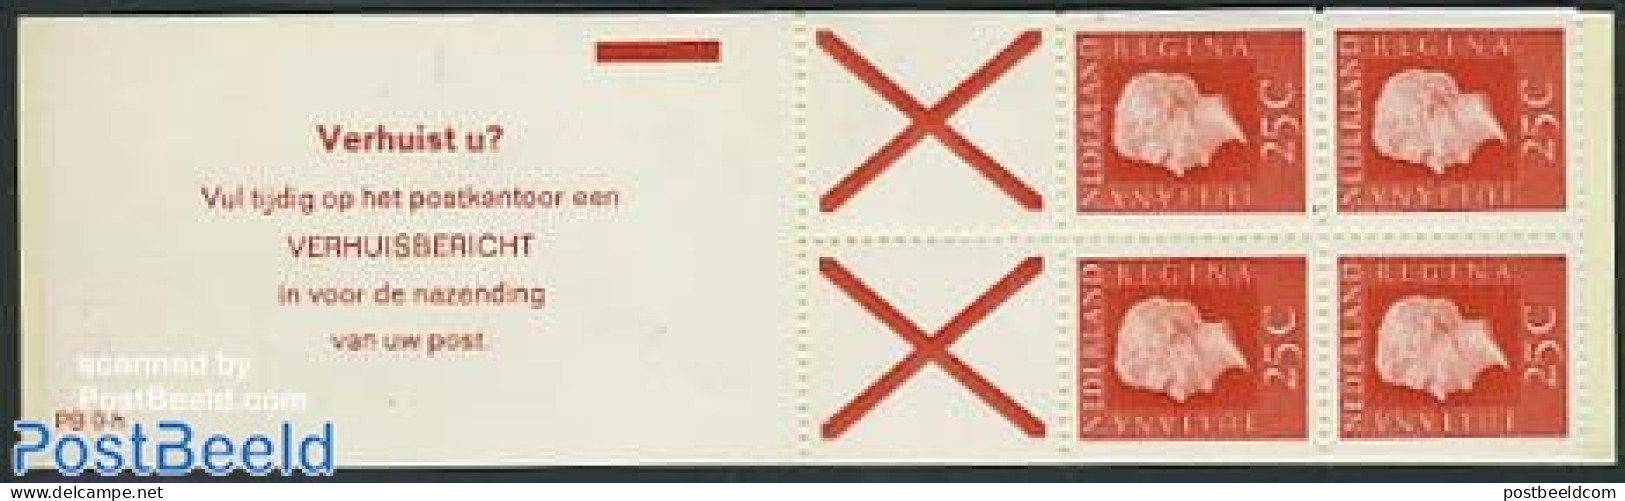 Netherlands 1971 4x25c Booklet, Phosphor, Text: Verhuist U? Vul Tij, Mint NH, Stamp Booklets - Ongebruikt